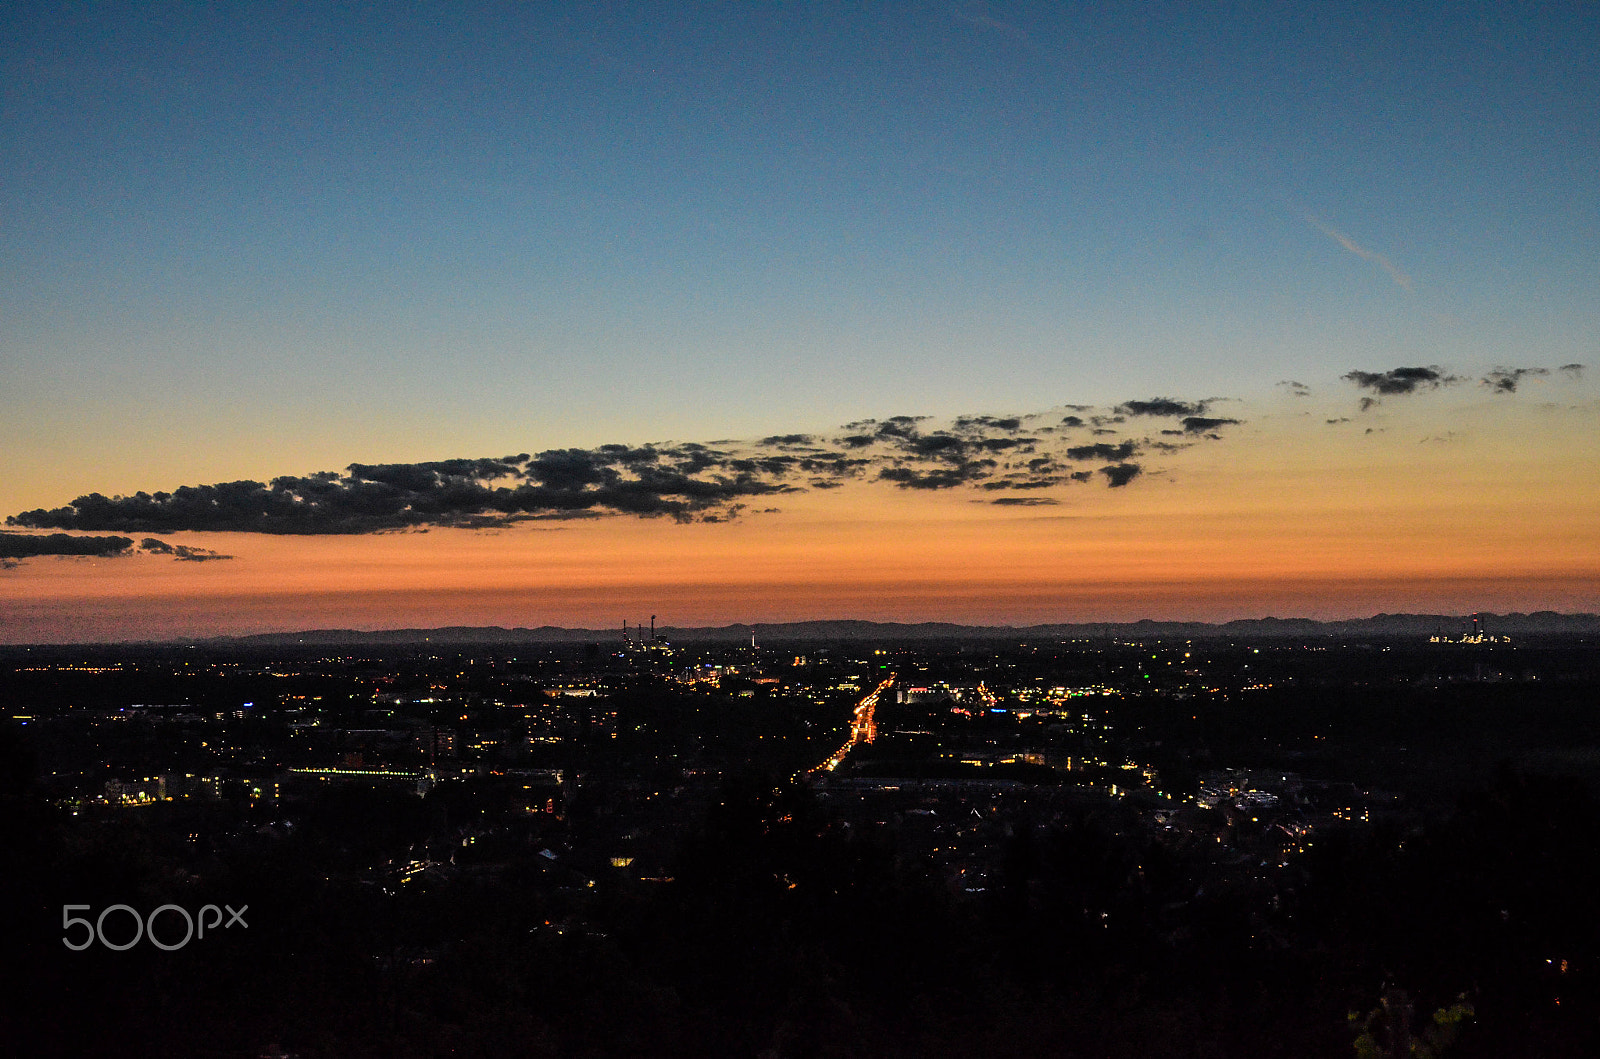 Nikon D5100 + Tamron AF 28-75mm F2.8 XR Di LD Aspherical (IF) sample photo. Sunset sky photography